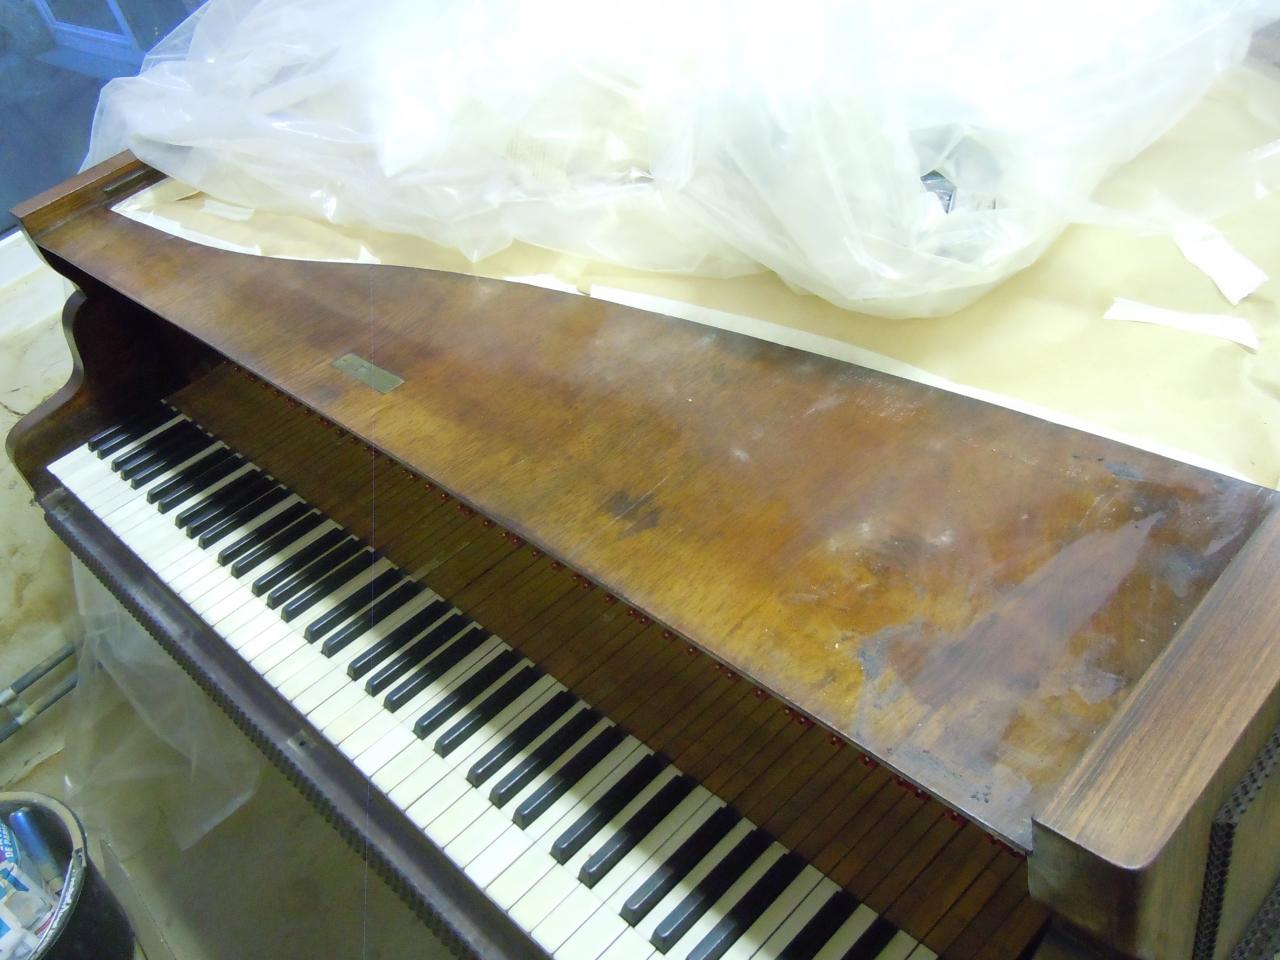 1 Restauration d'un piano Erard en palissandre.